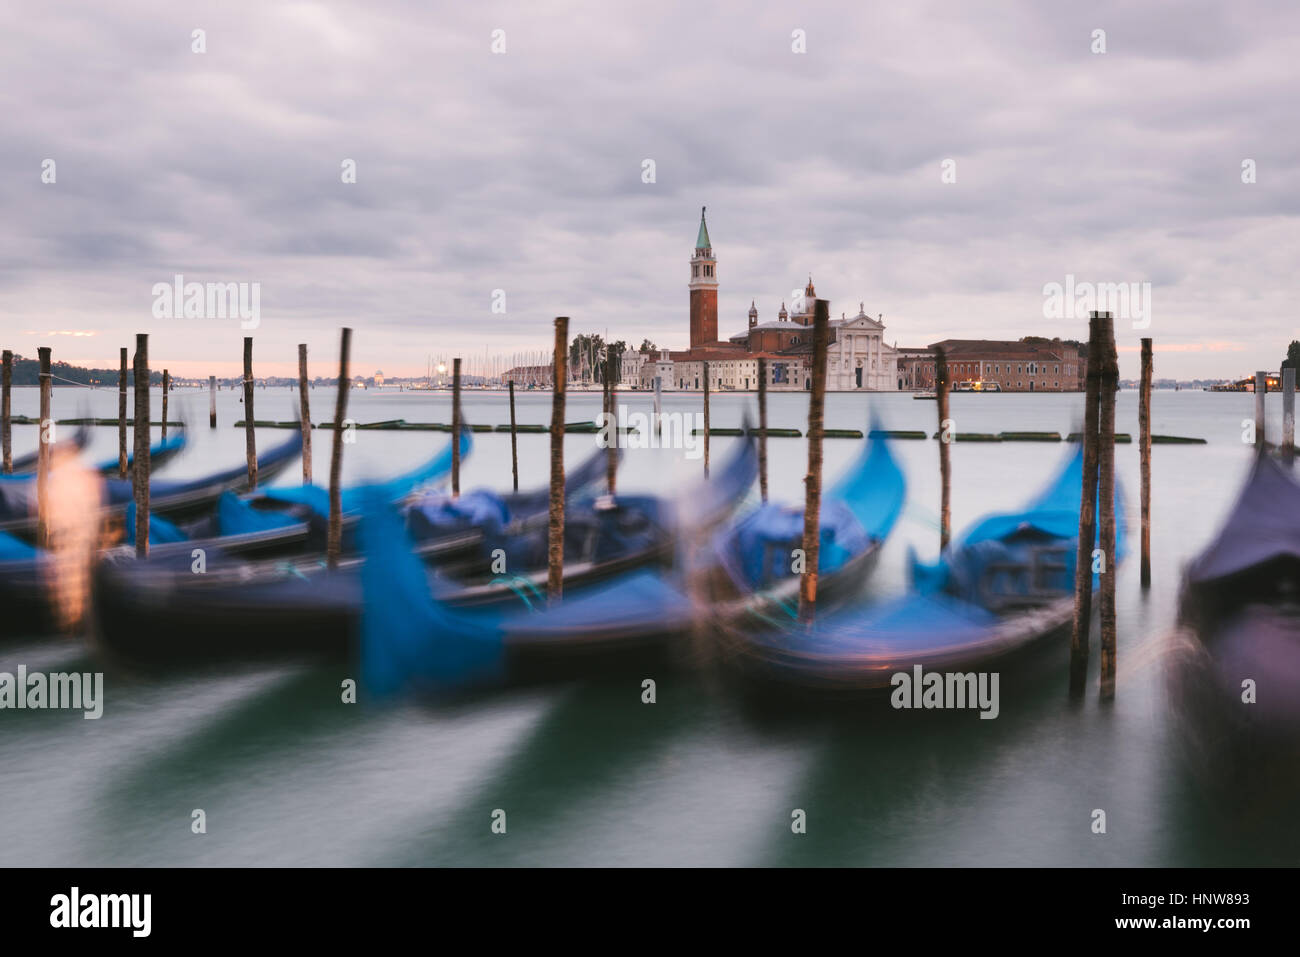 Gondolas in Grand Canal, San Giorgio Maggiore Island in background, Venice, Italy Stock Photo